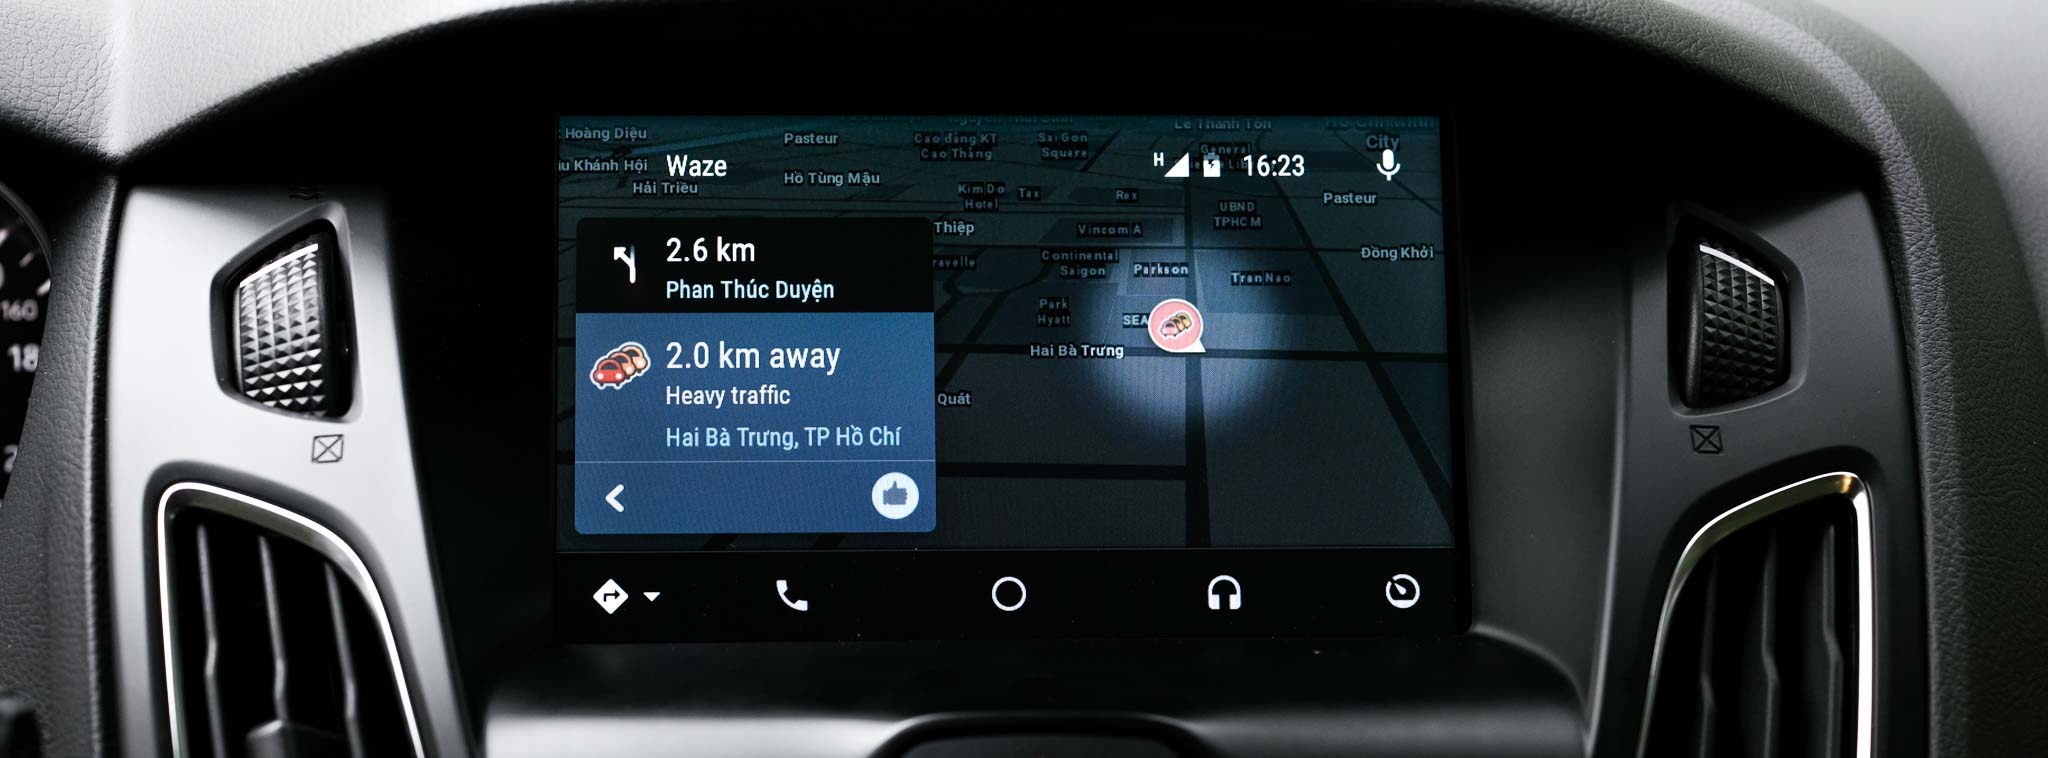 Waze GPS: Dẫn đường với các thông tin giao thông được chia sẻ trực tiếp